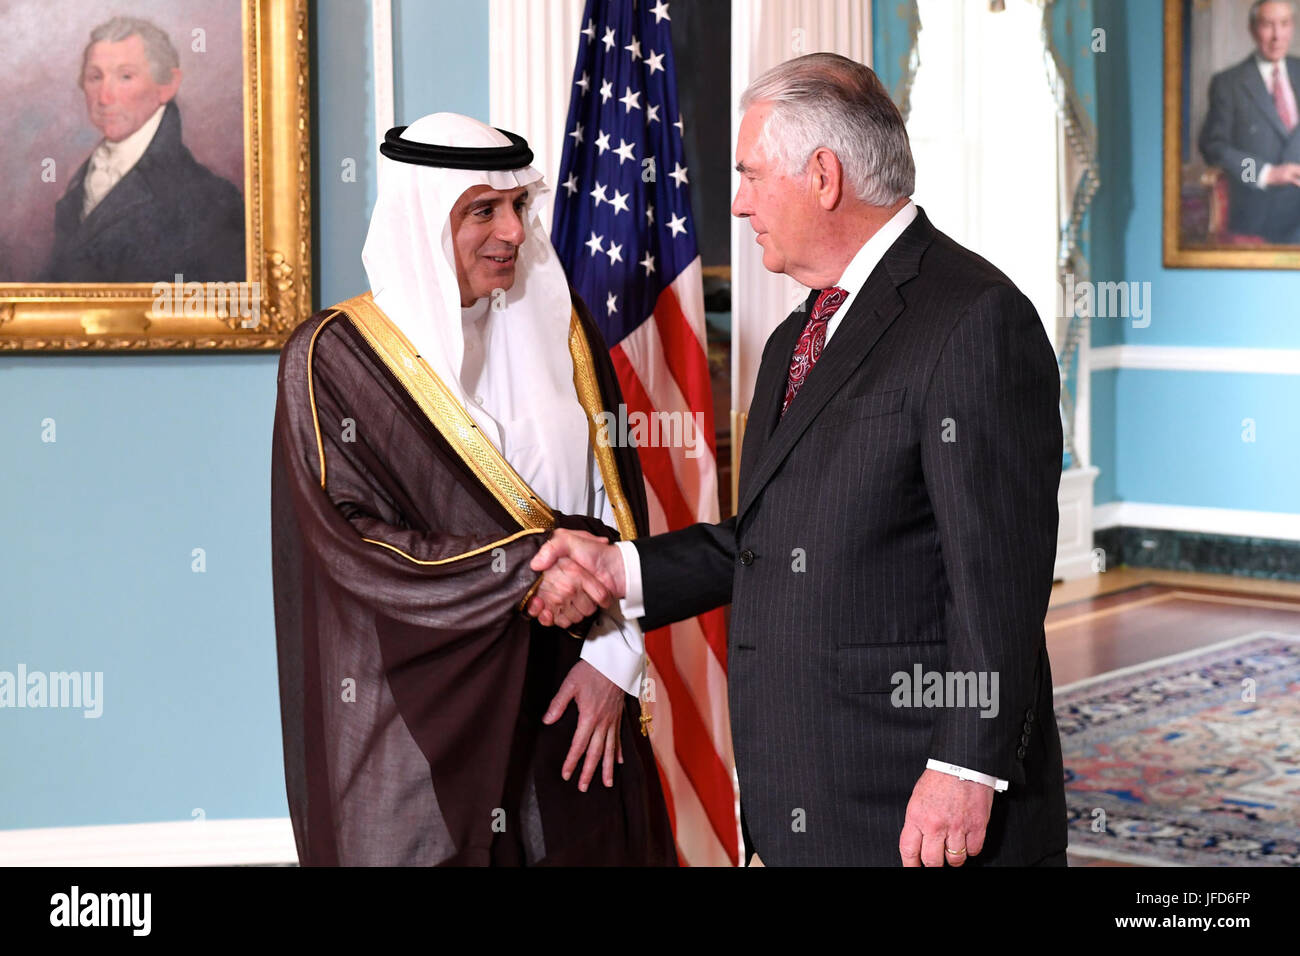 La secrétaire d'État des États-Unis, Rex Tillerson accueille le ministre saoudien des affaires étrangères Adel al-Jubeir avant leur réunion bilatérale au département d'État des États-Unis à Washington, D.C., le 2 mai 2017. Banque D'Images